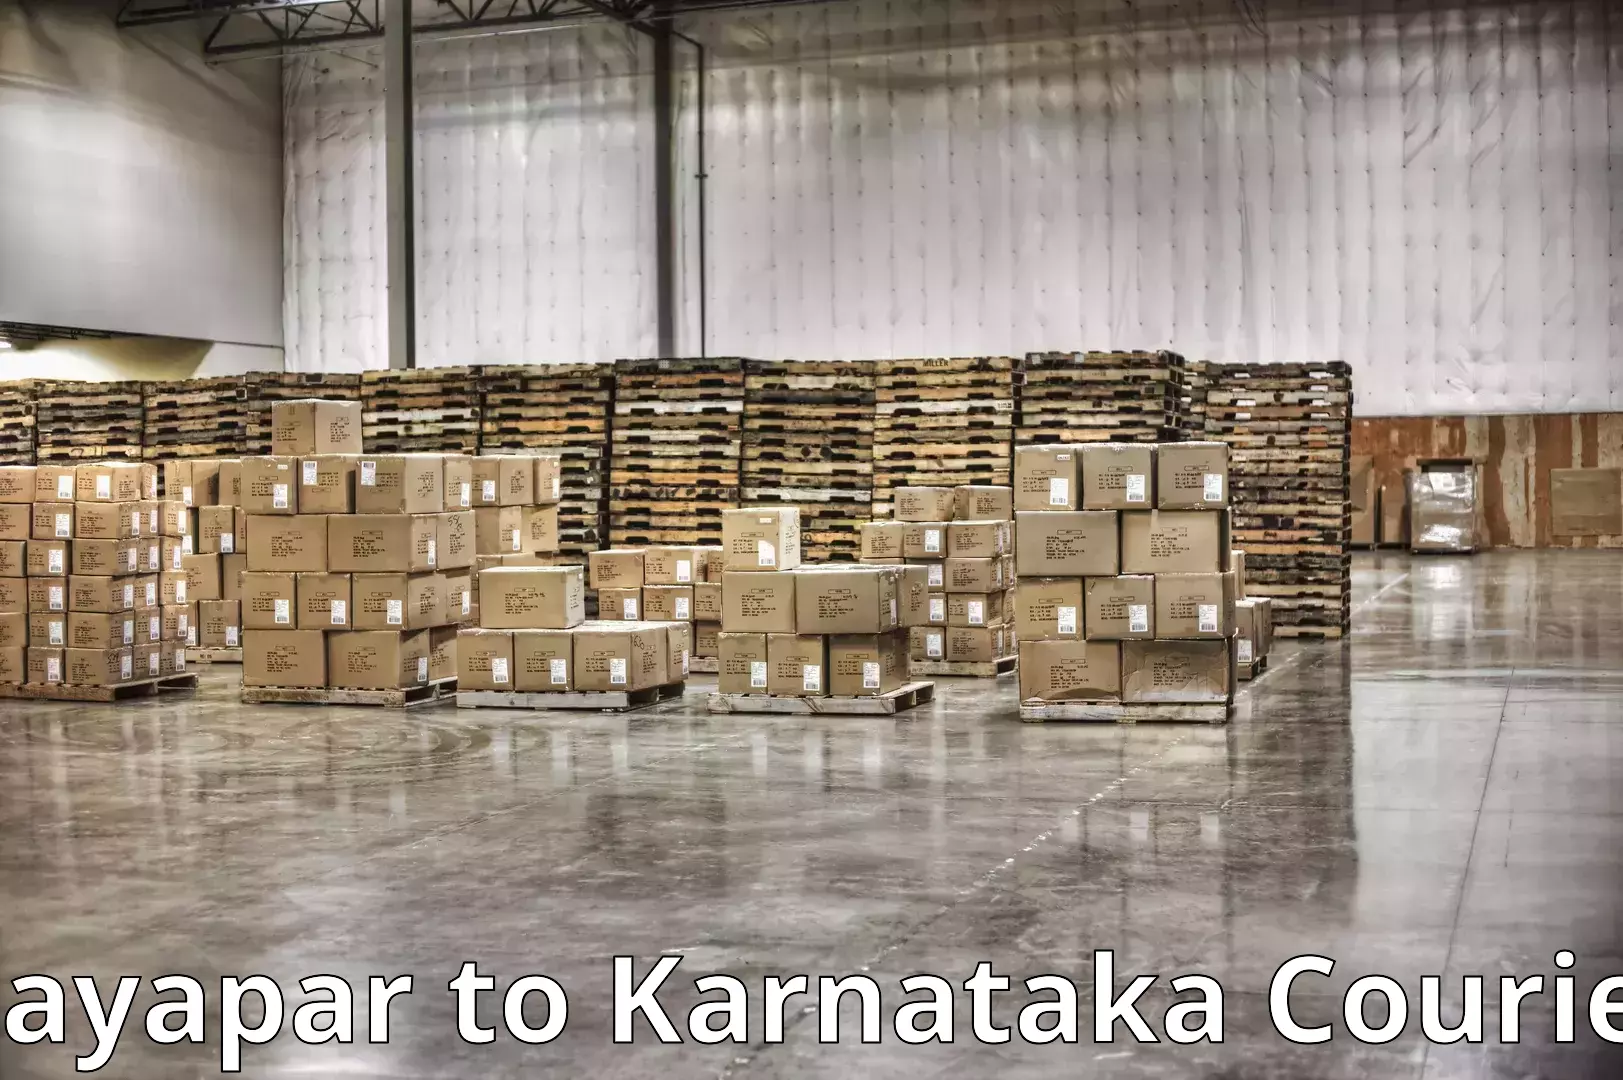 Professional furniture transport Dayapar to Karnataka